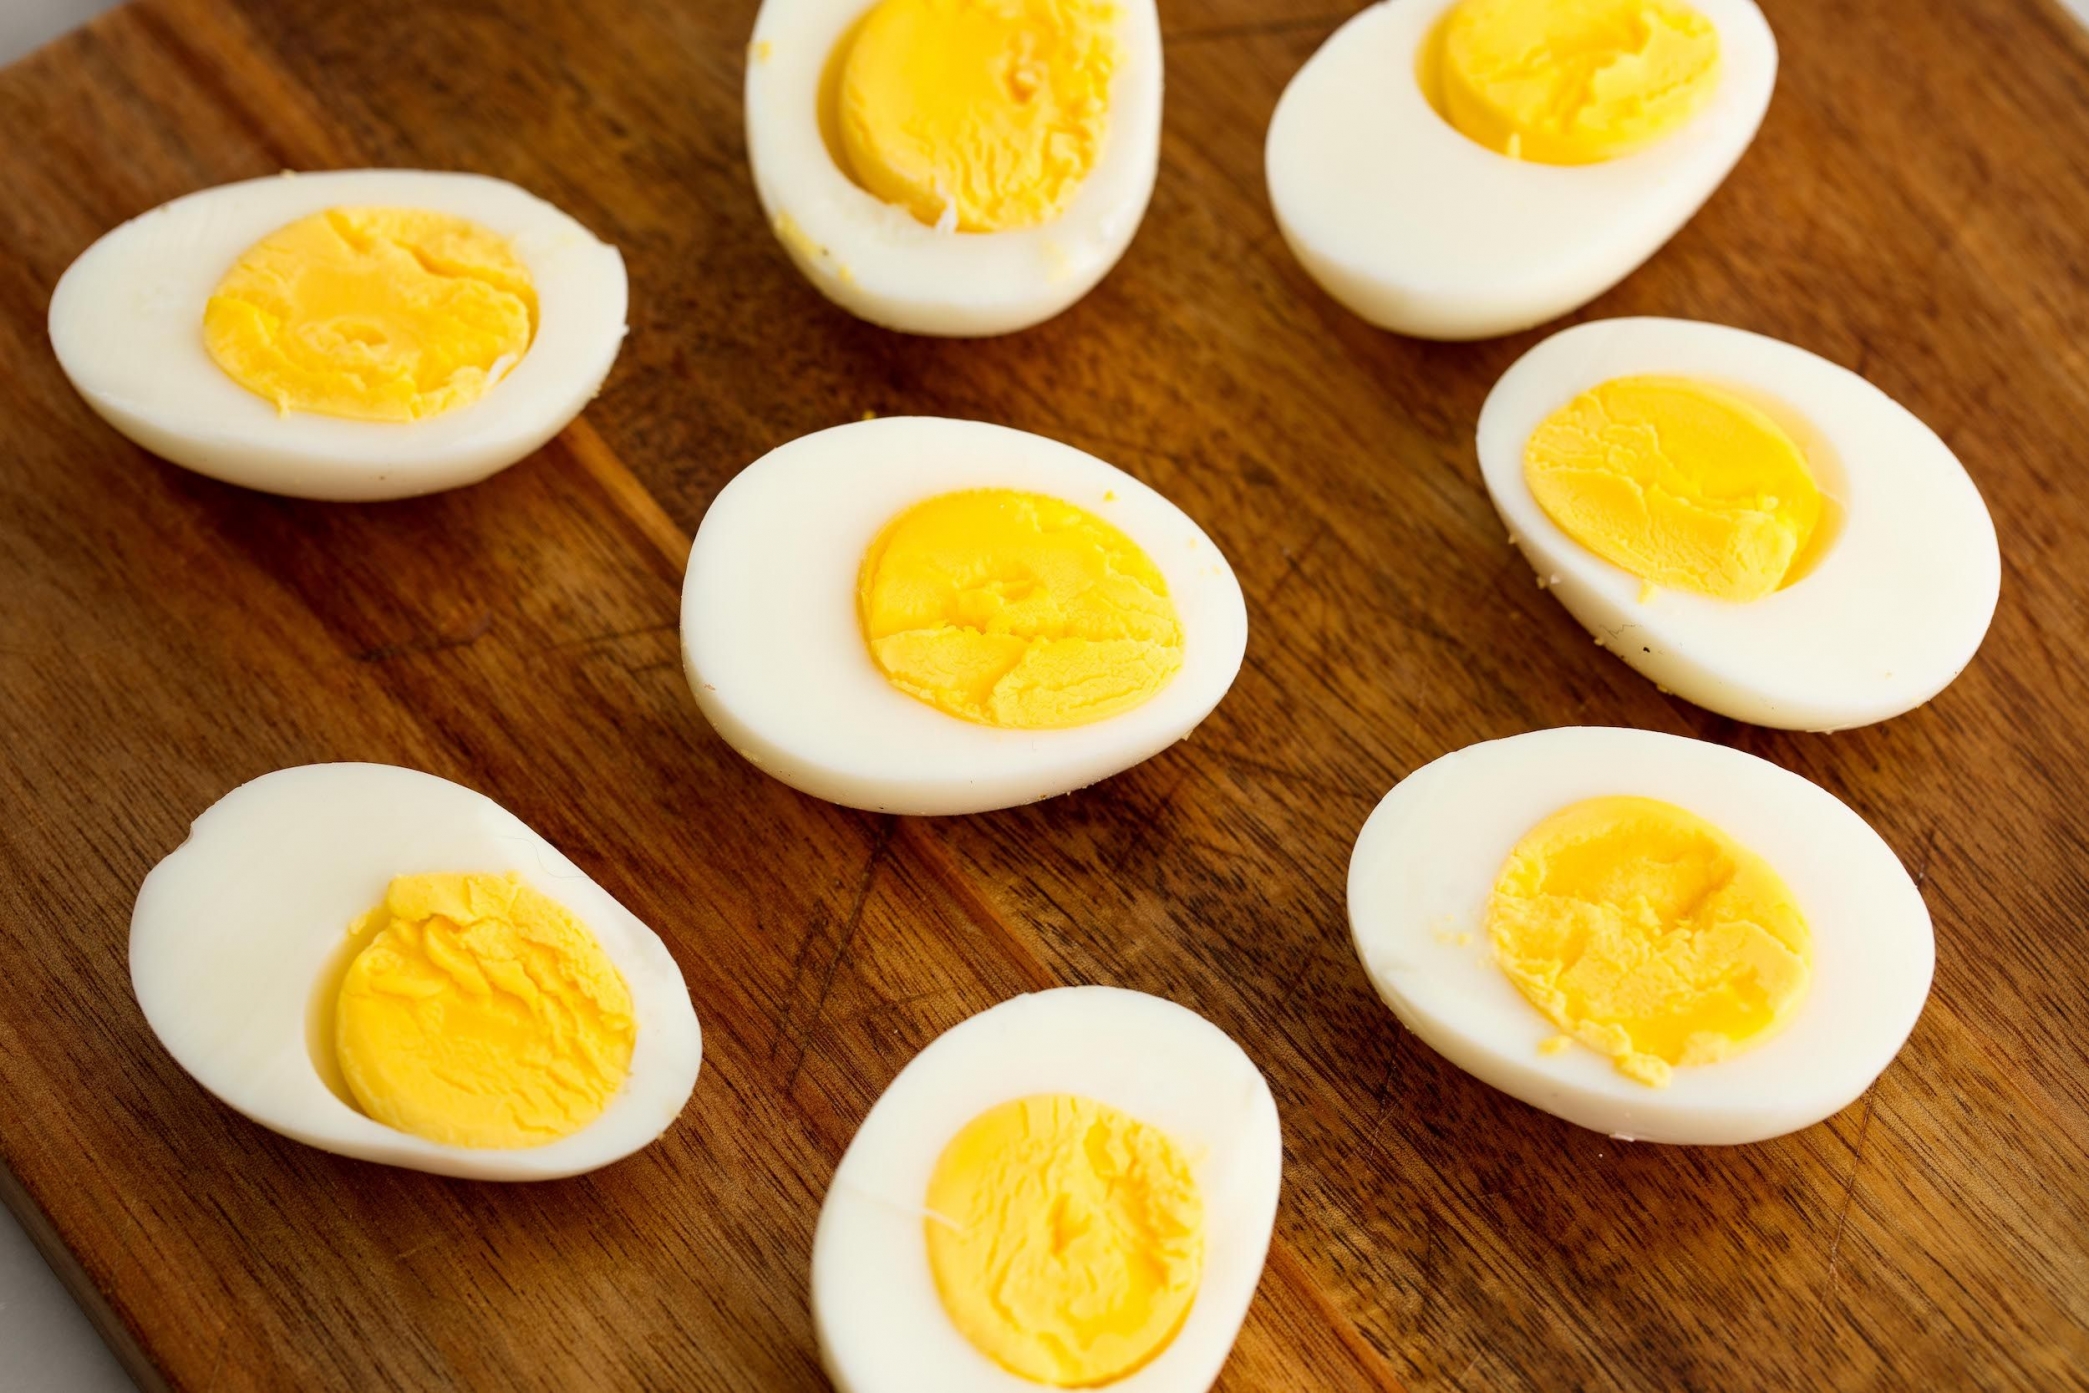 الغذاء والدواء تكشف حقيقة ظهور مادة ضارة عند سلق البيض